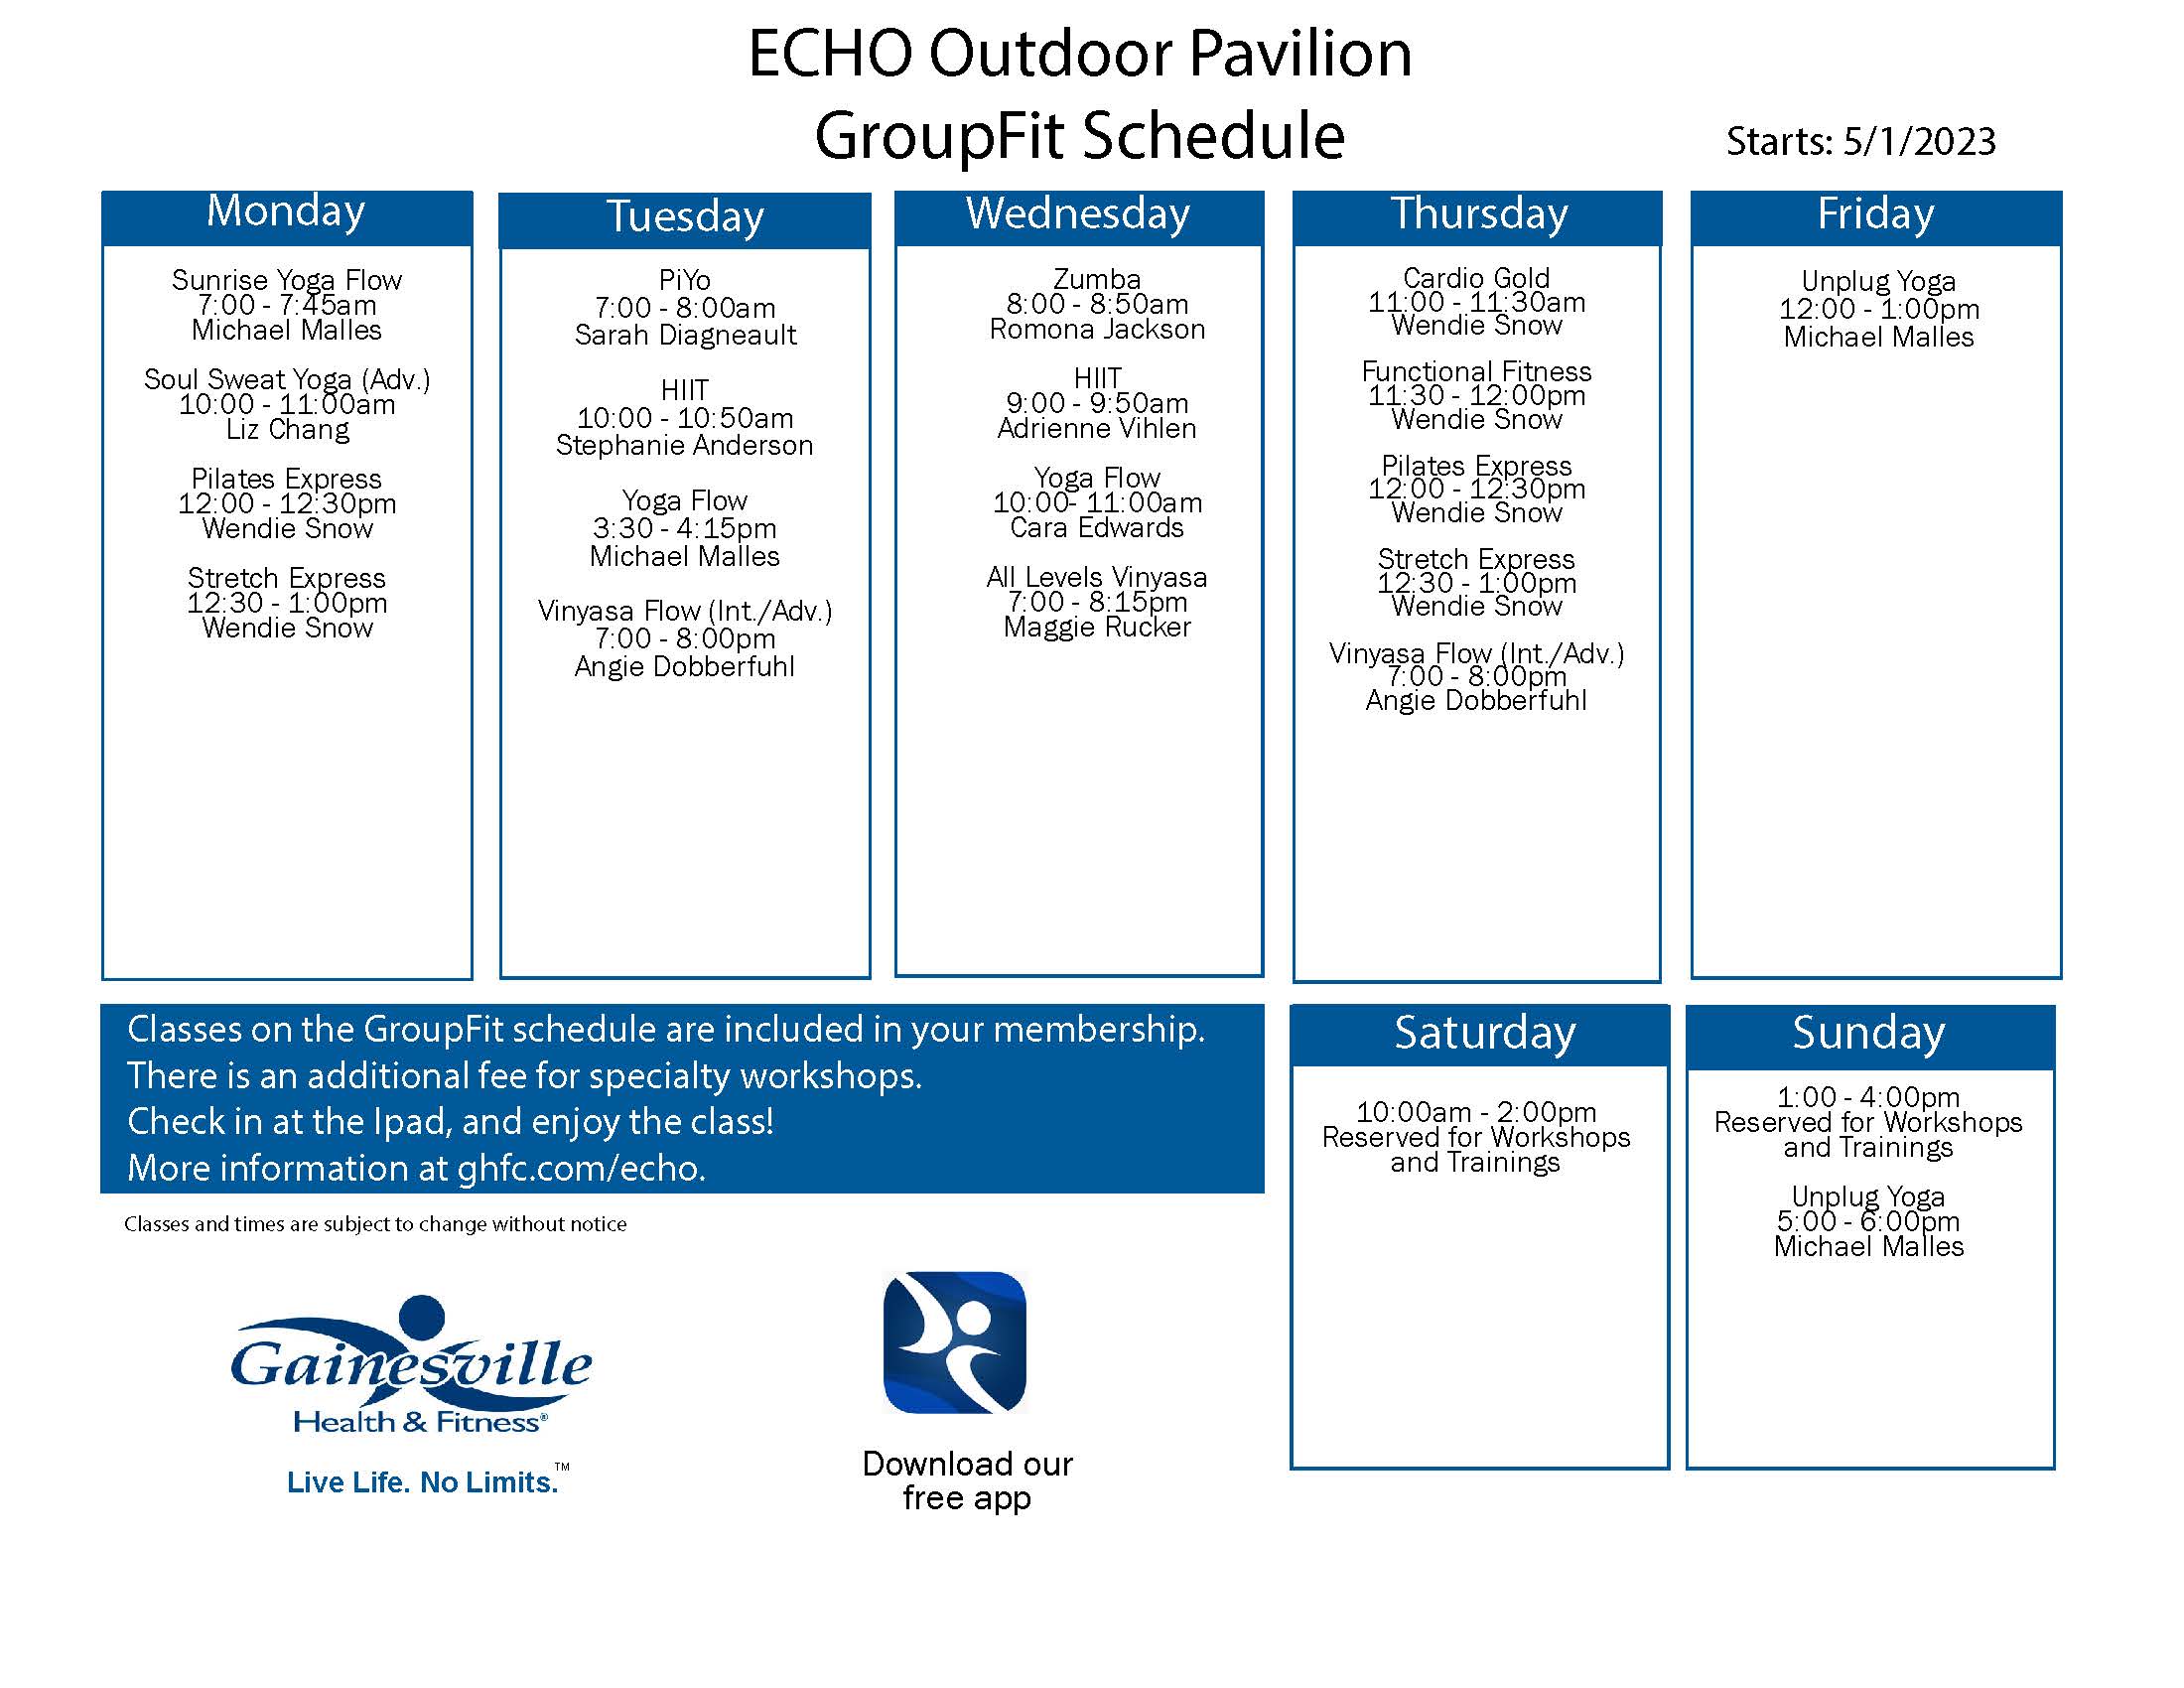 Echo outdoor group schedule